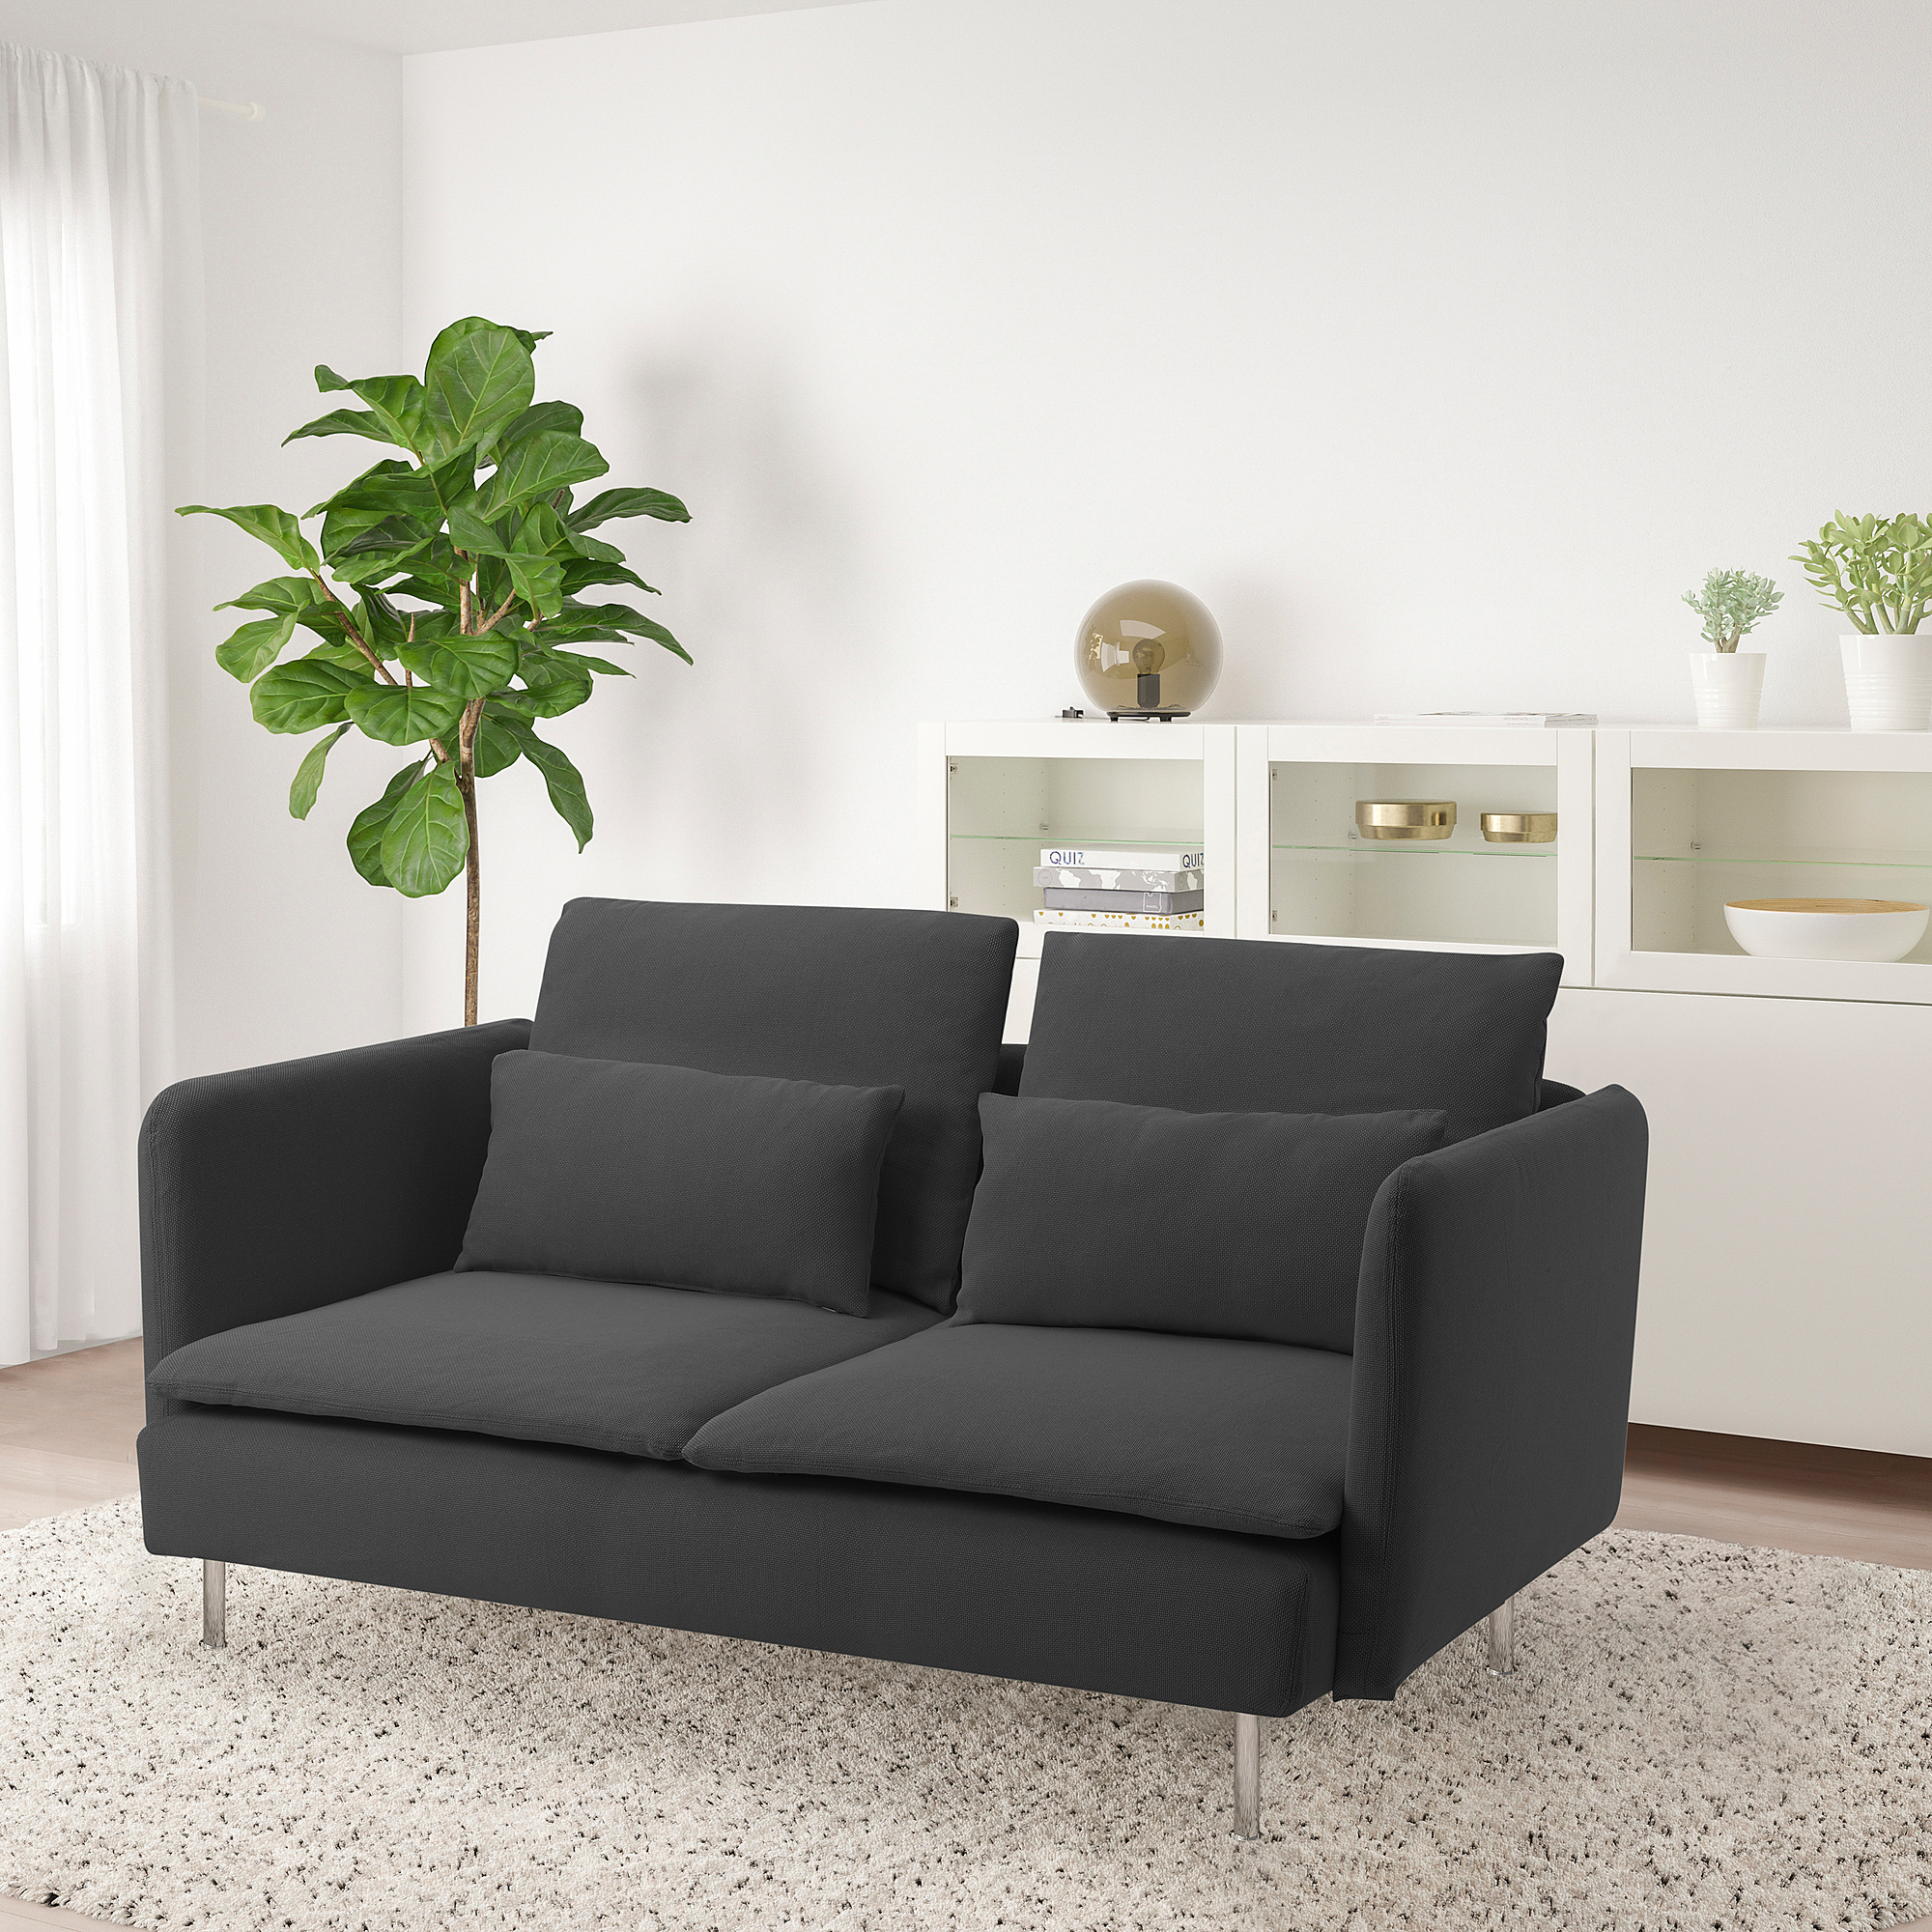 SÖDERHAMN - compact 3-seat sofa, Fridtuna dark grey, 157x90x39 cm